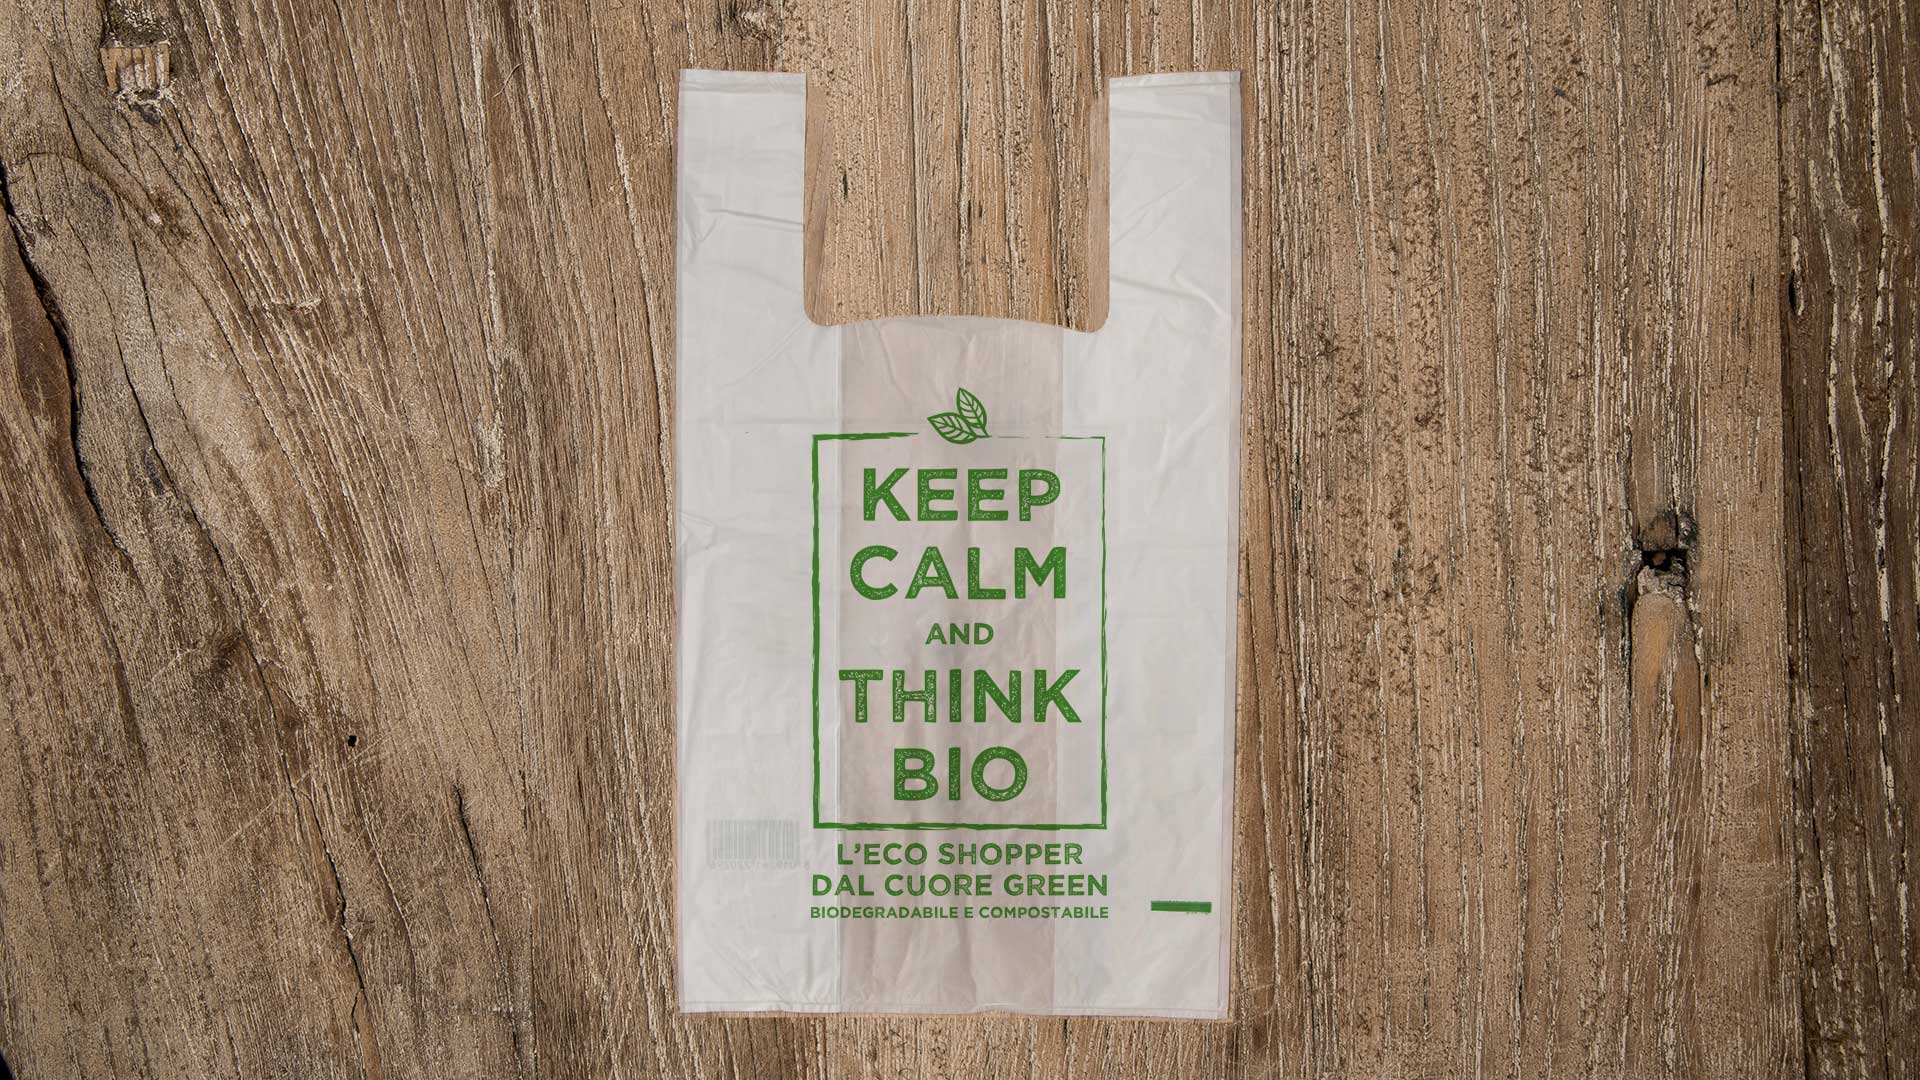 Planet Bamboo 100% compostabile secondo EN 13432 Sacchi biodegradabili compostabili da 7 a 10 L con manico | 100 pezzi | Marrone